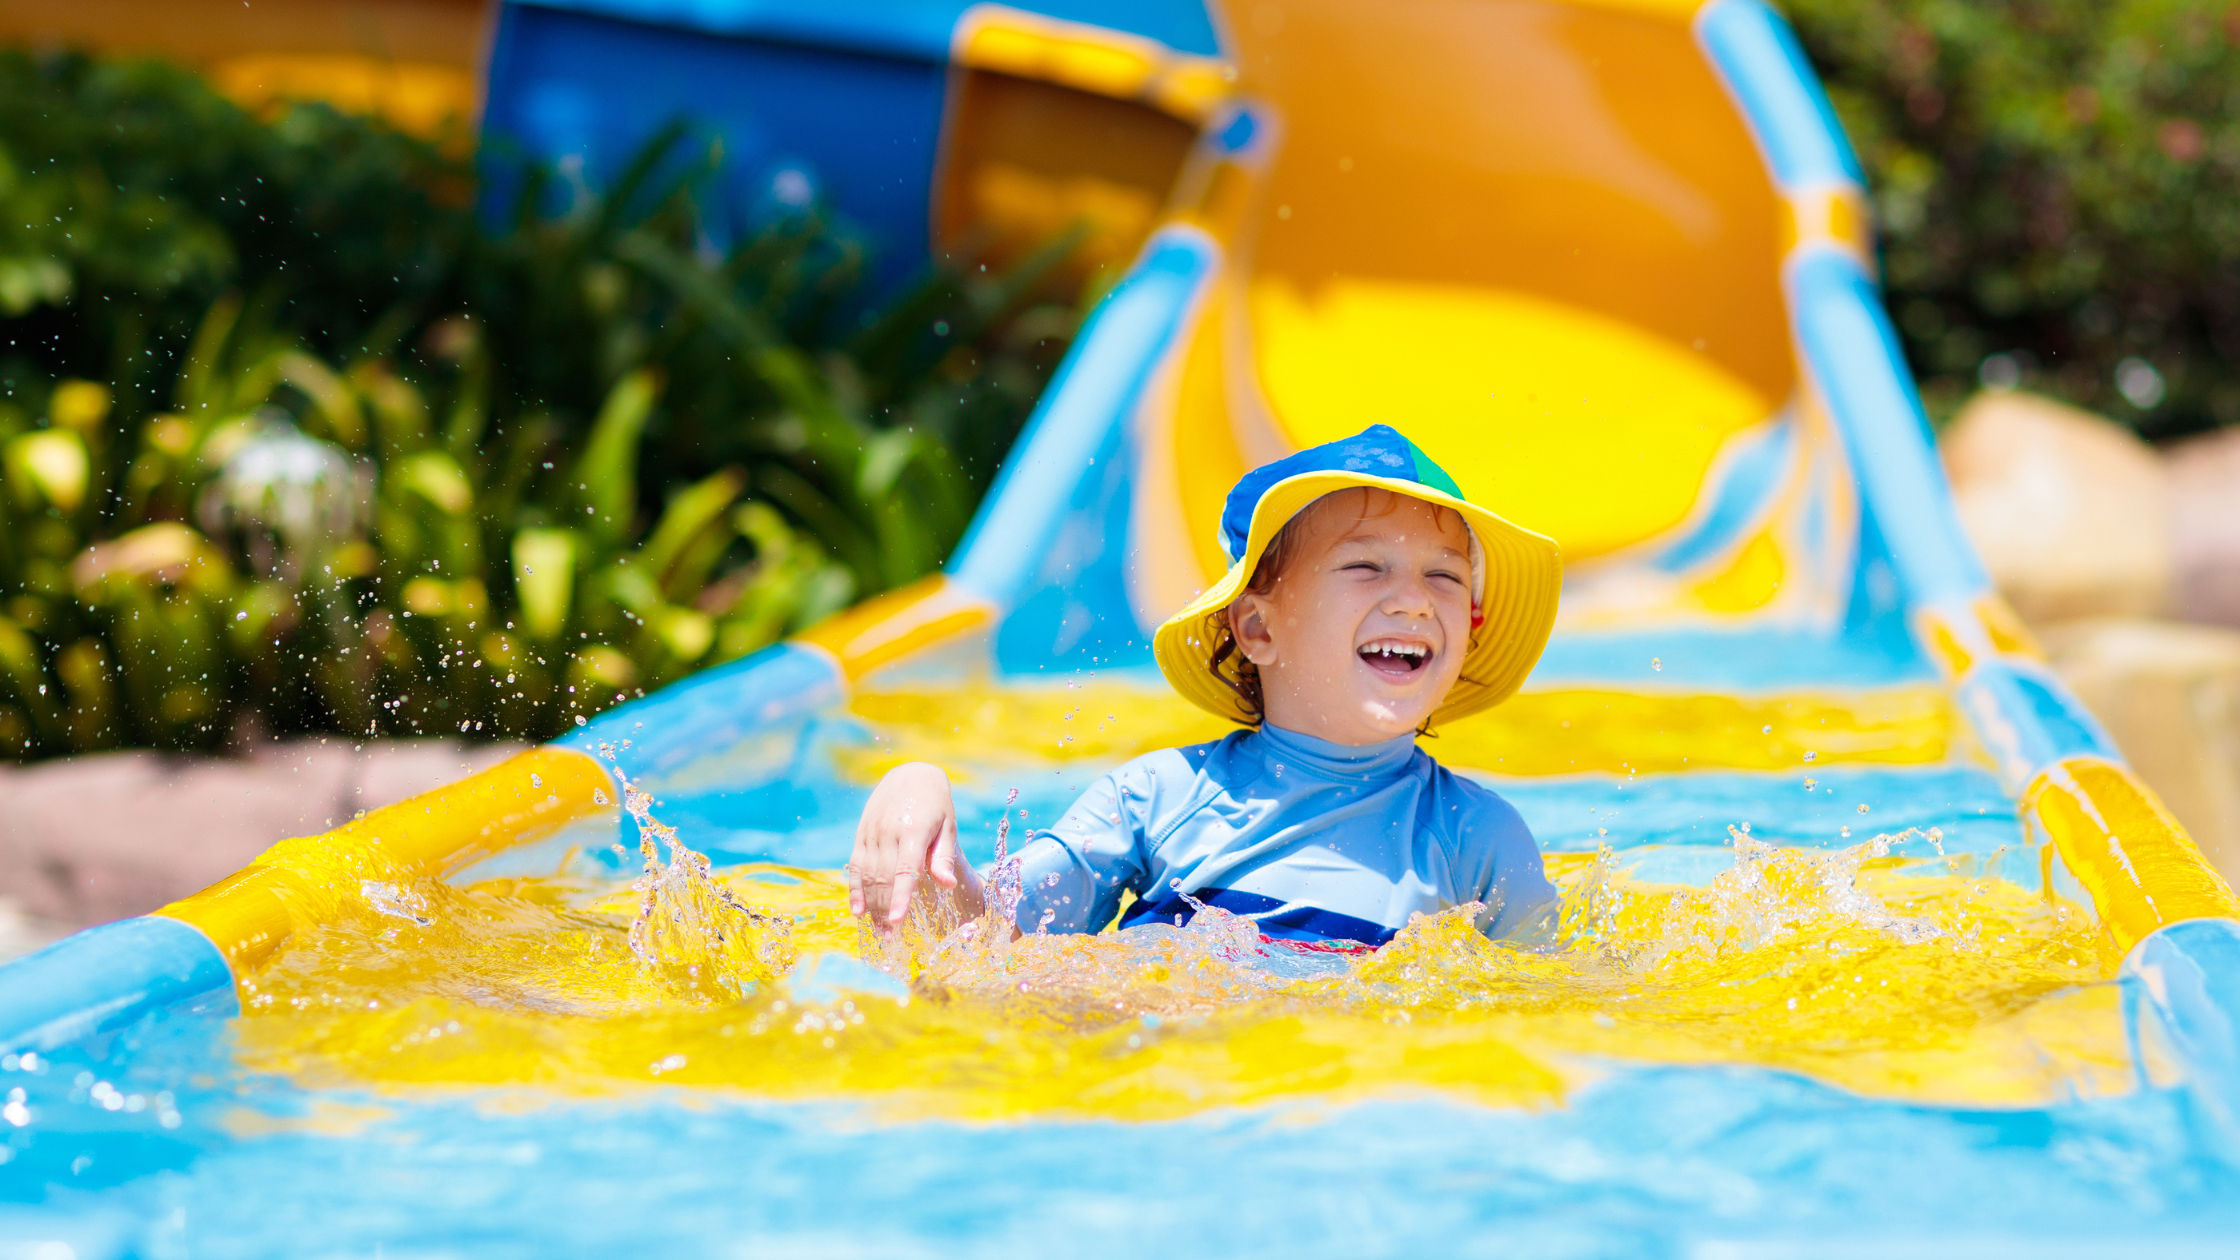 Children on a water slide.